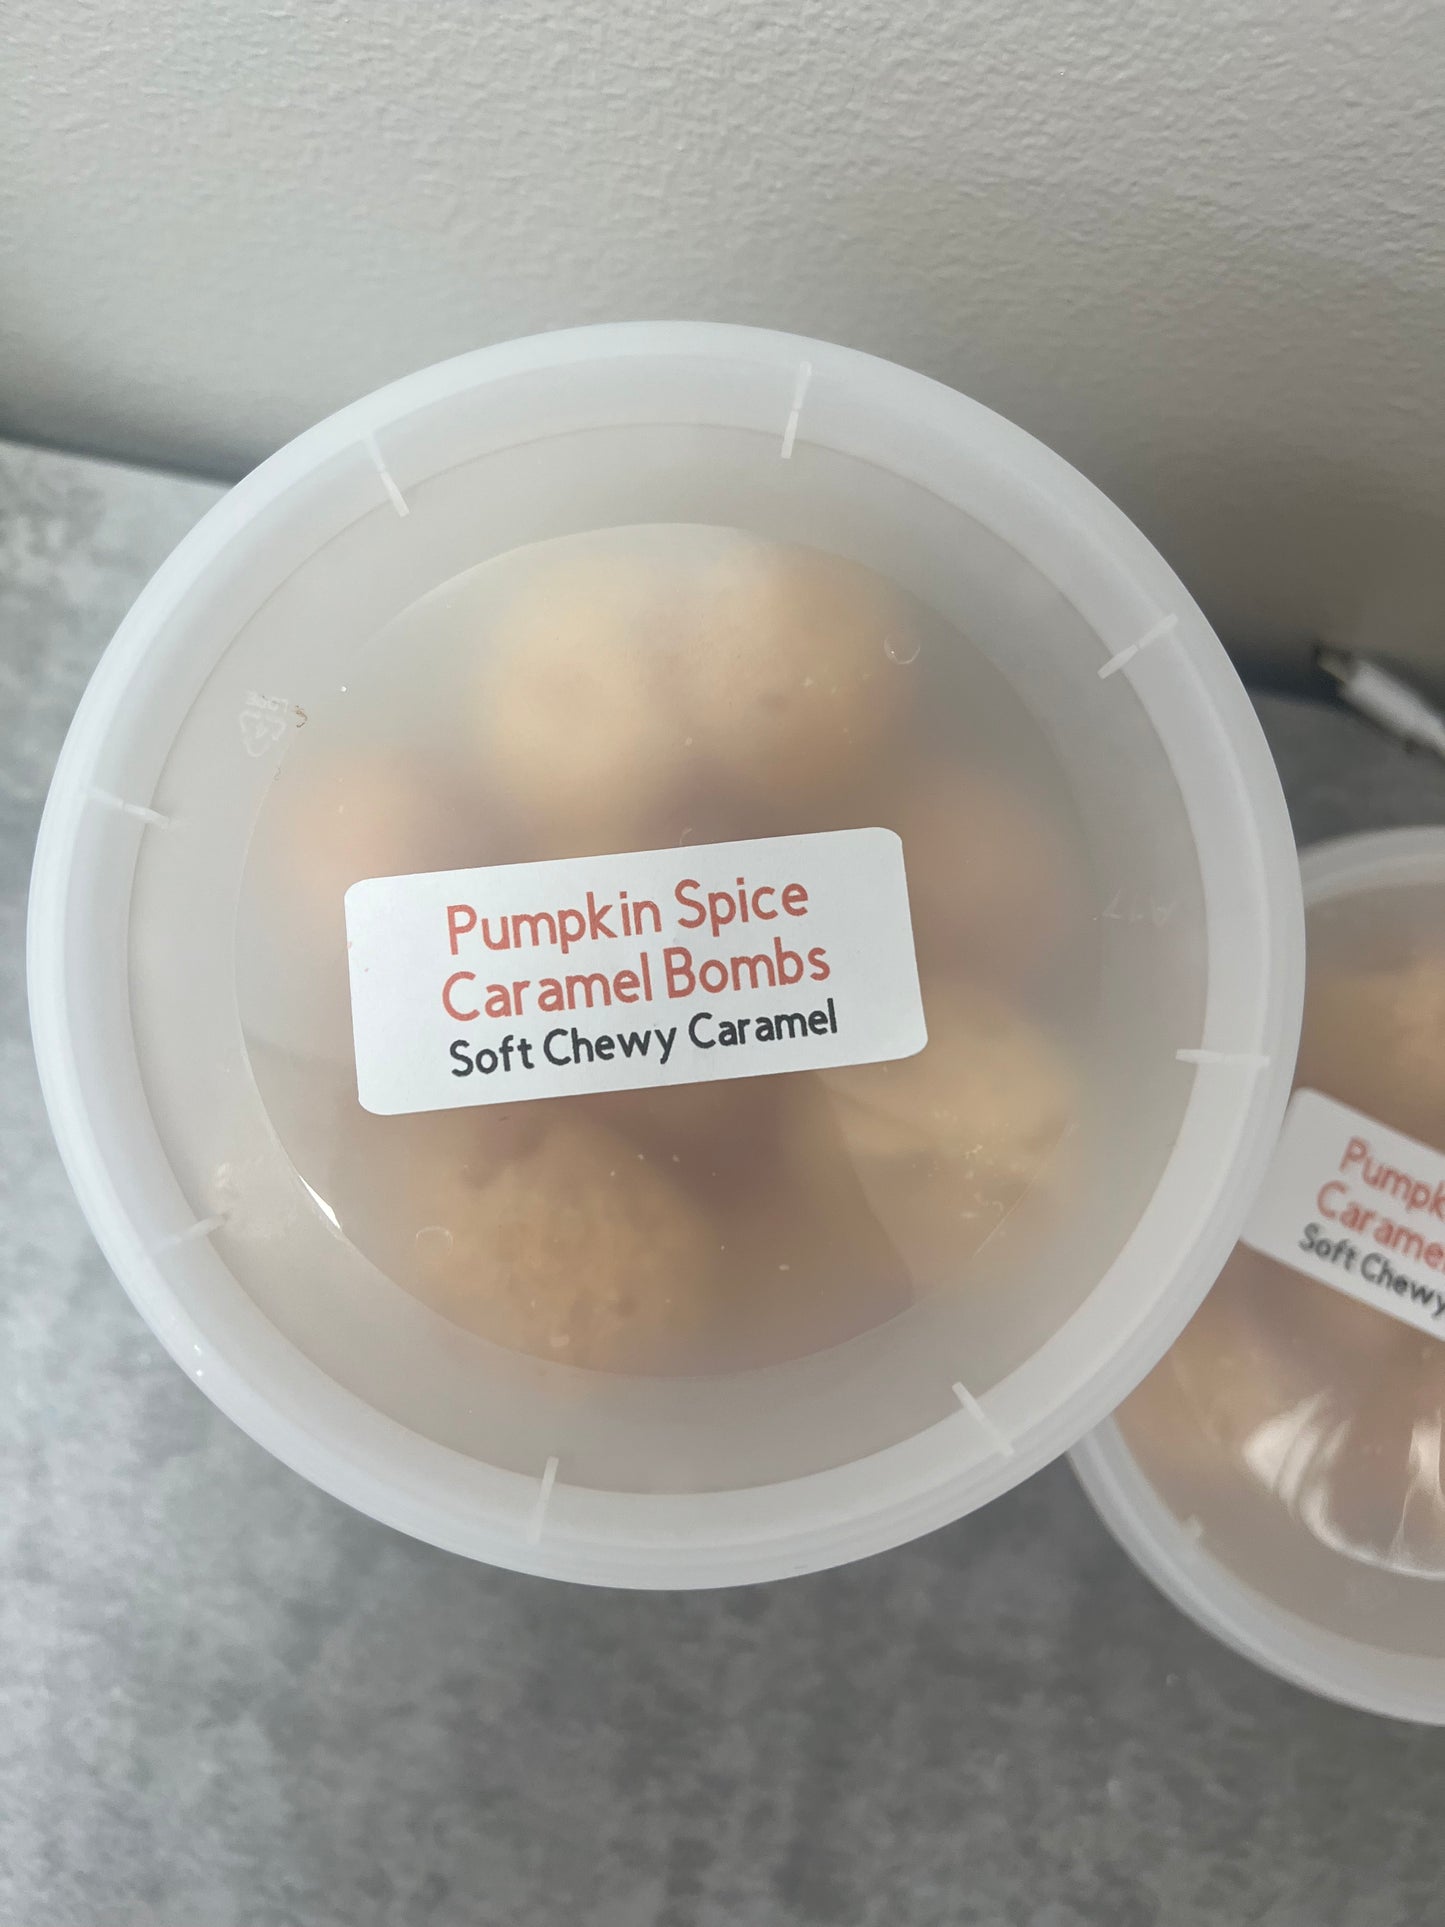 Pumpkin Spice Caramel Bombs